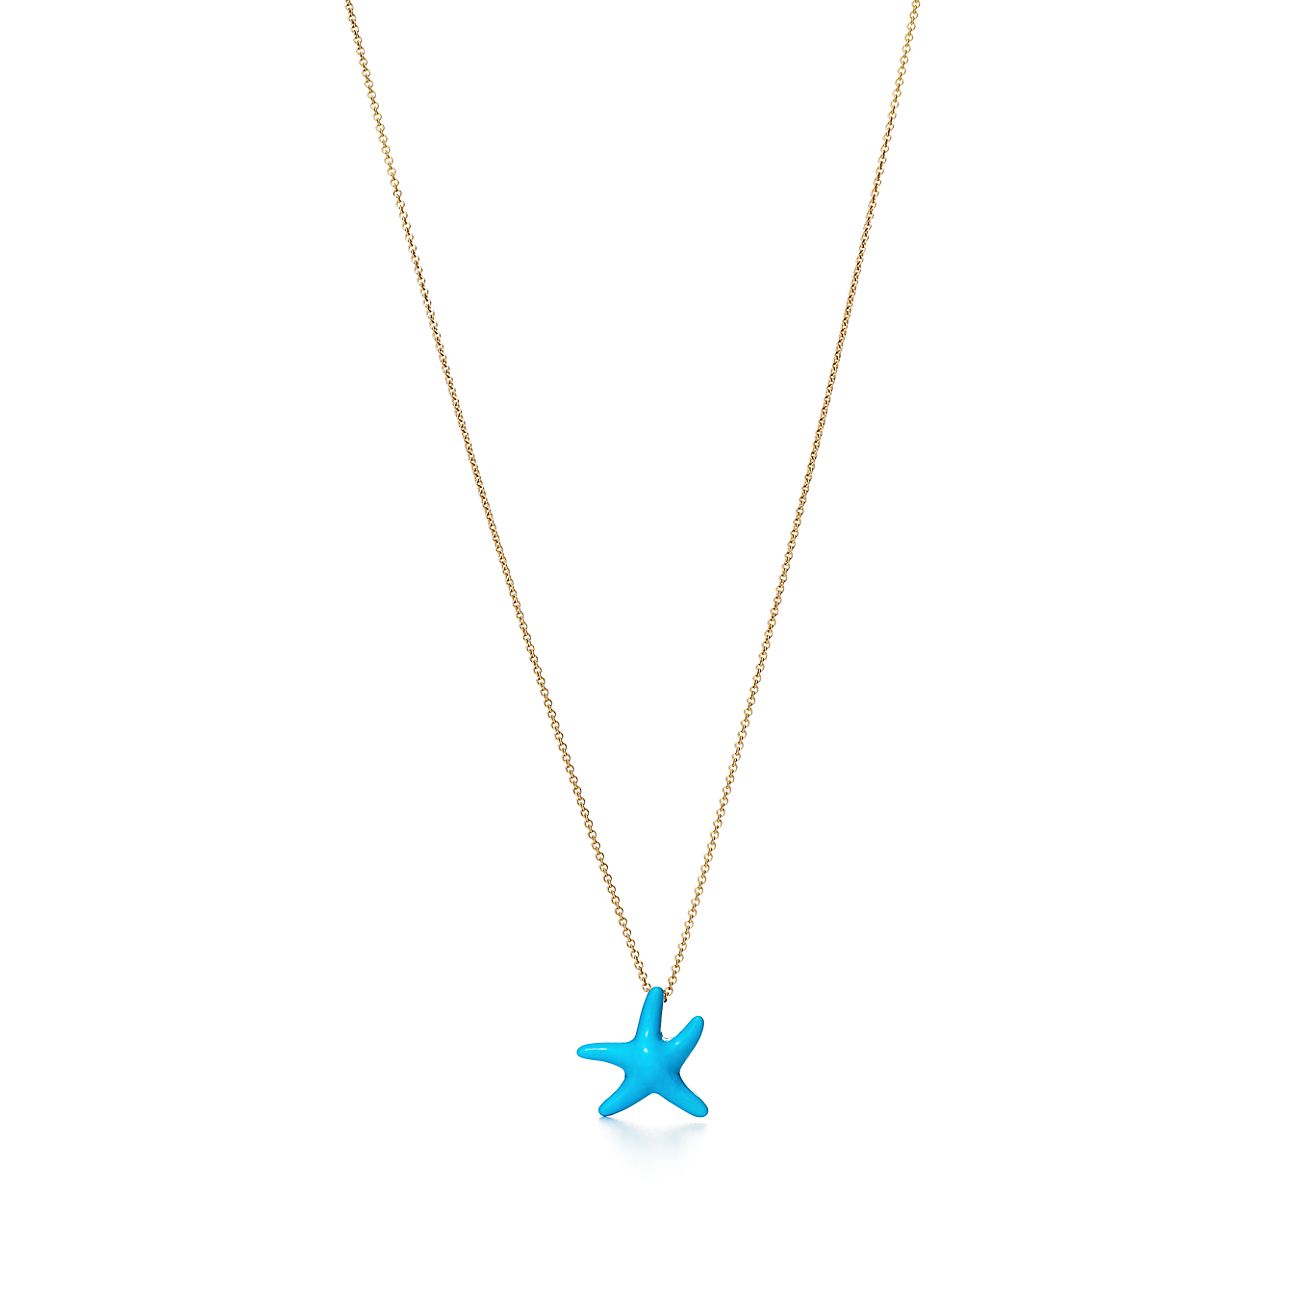 elsa peretti starfish necklace